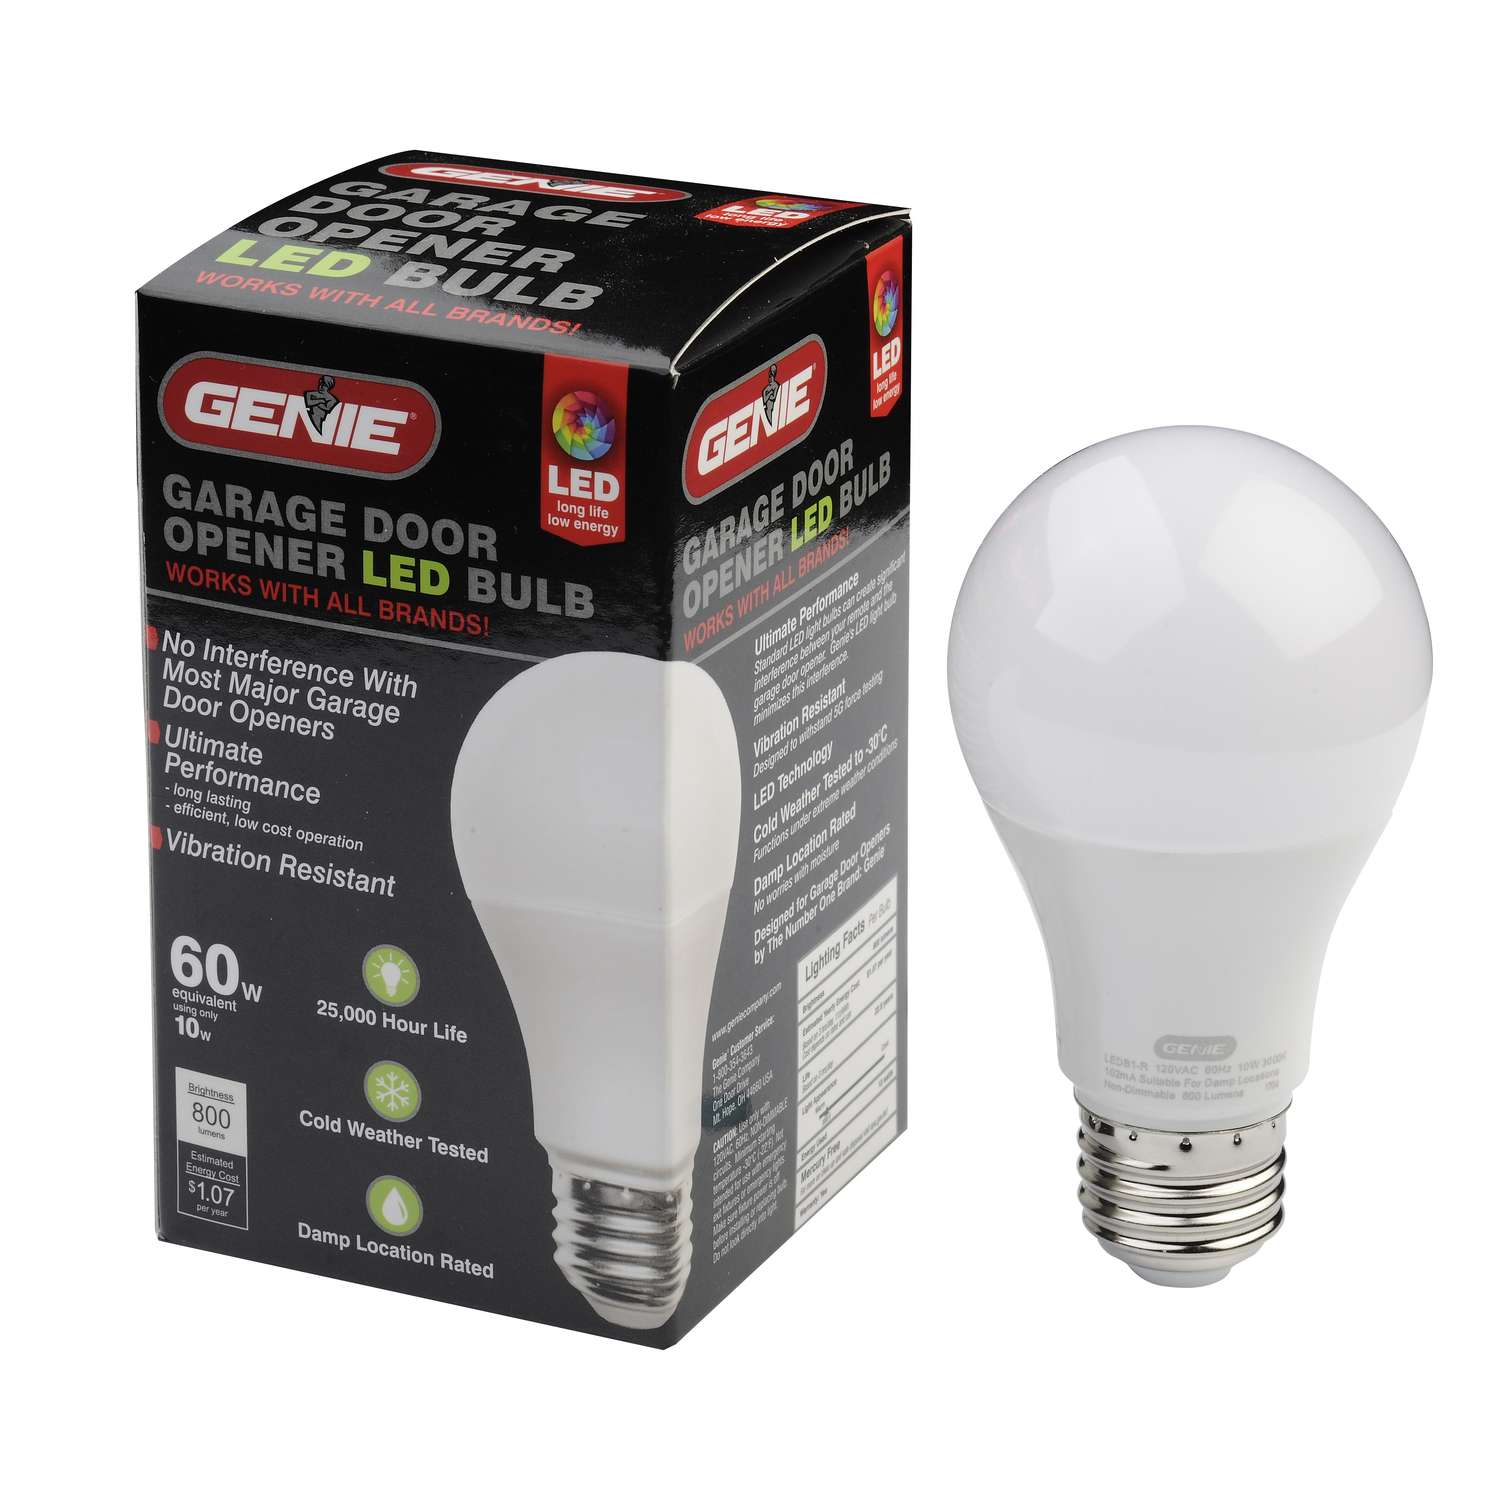 40 Good Light bulb in garage door opener keeps blowing for New Ideas